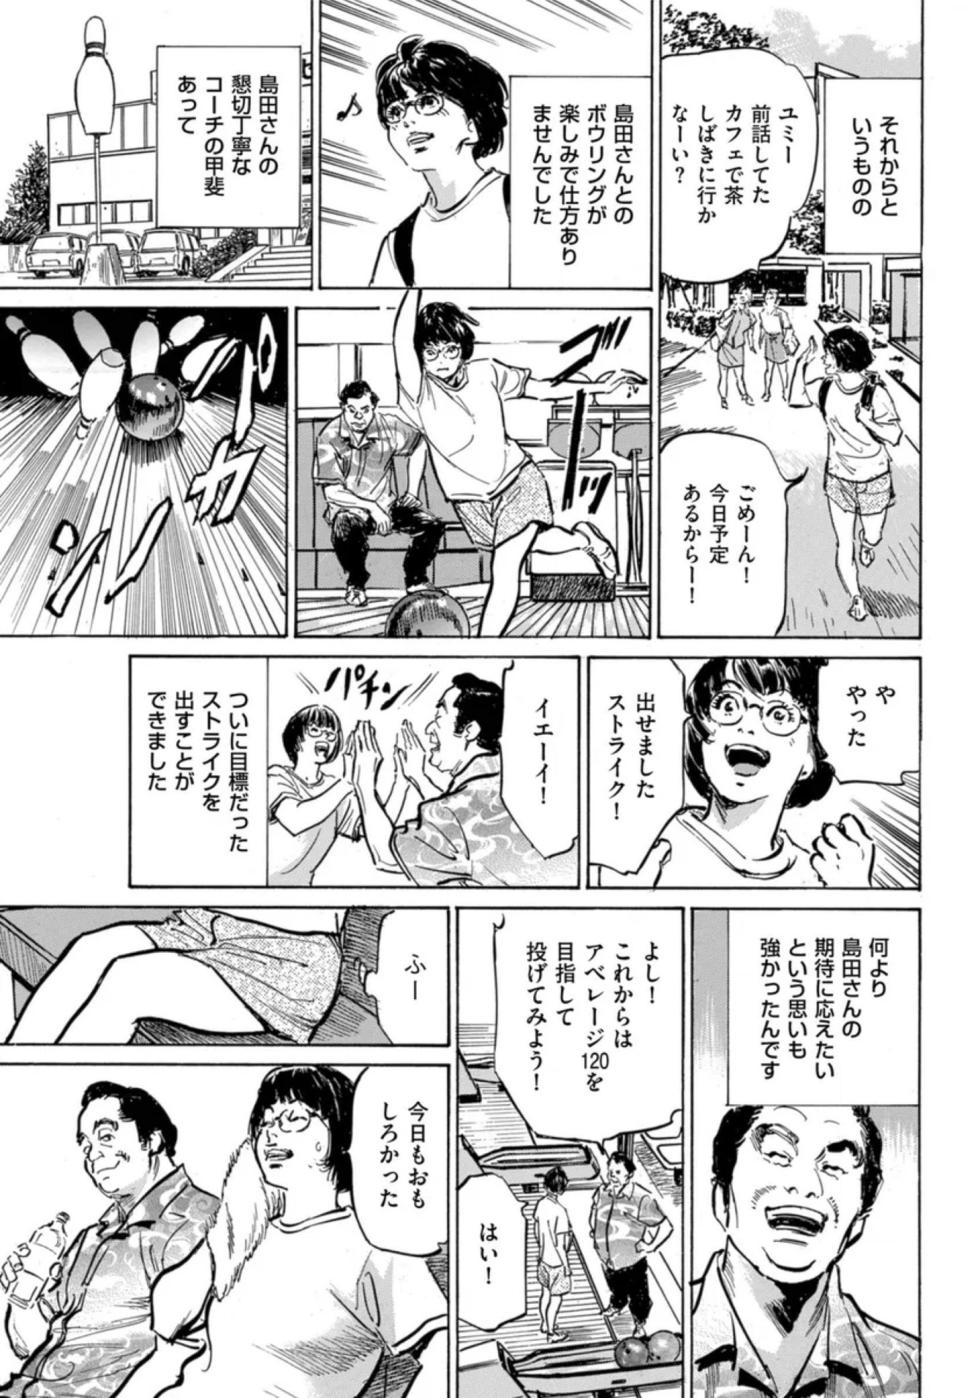 [Hazuki Kaoru] Zutto Himitsu ni Shiteita Ano Koto Zenbu Oshiemasu 14 episodes (Edition published in Men's Gold) [Digital] - Page 24